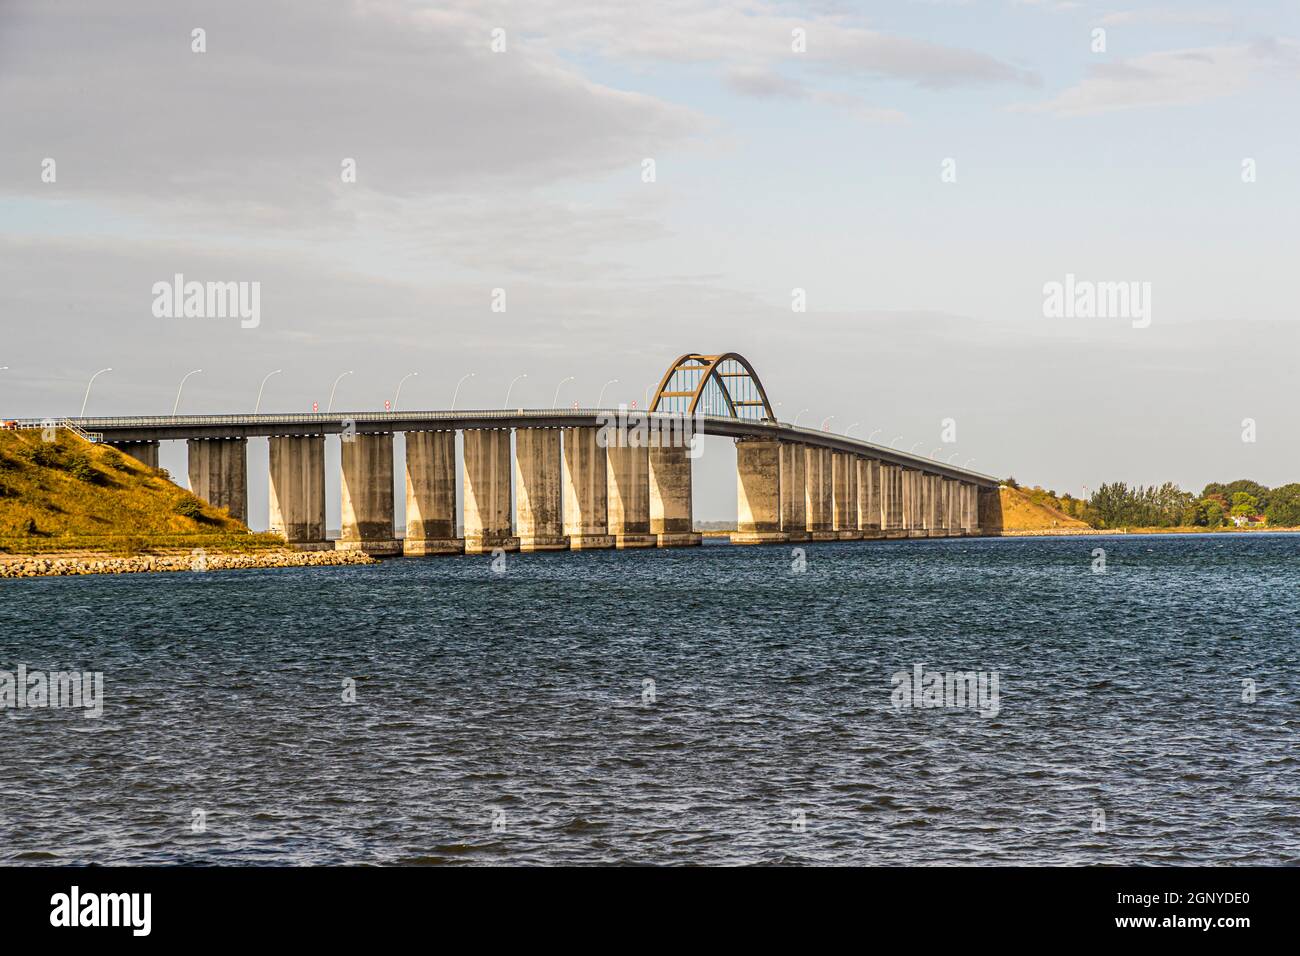 Le pont de Langeland, qui relie Langeland à la petite île de Siø et via l'île de Täsne à l'île de Funen (Fyn).Langeland, Danemark Banque D'Images